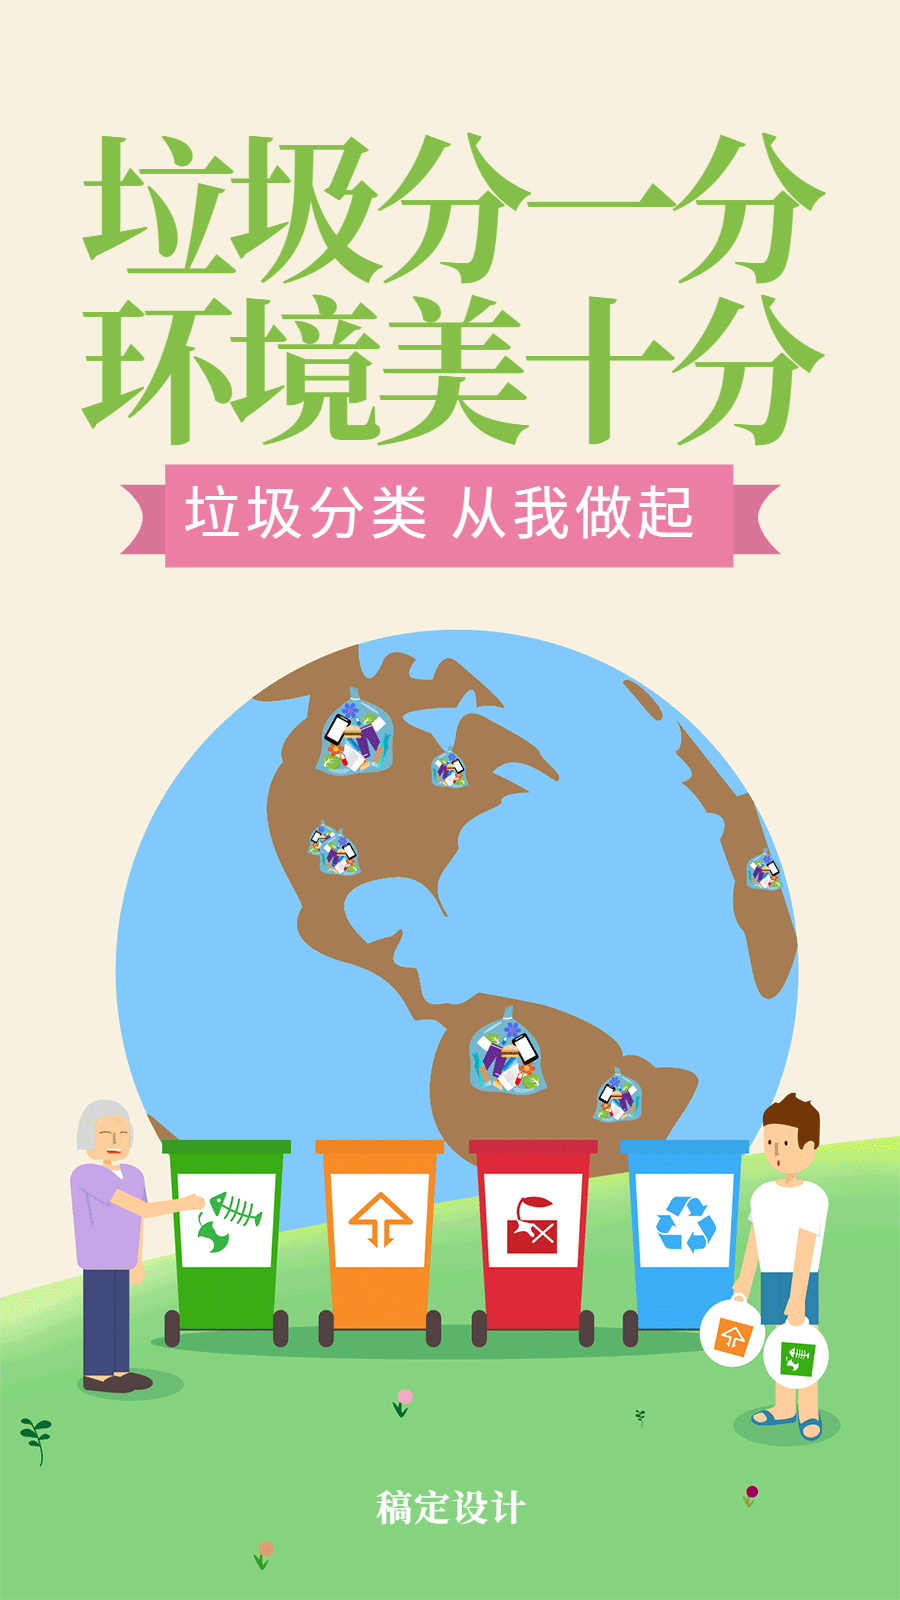 垃圾分类保护环境热点动态海报